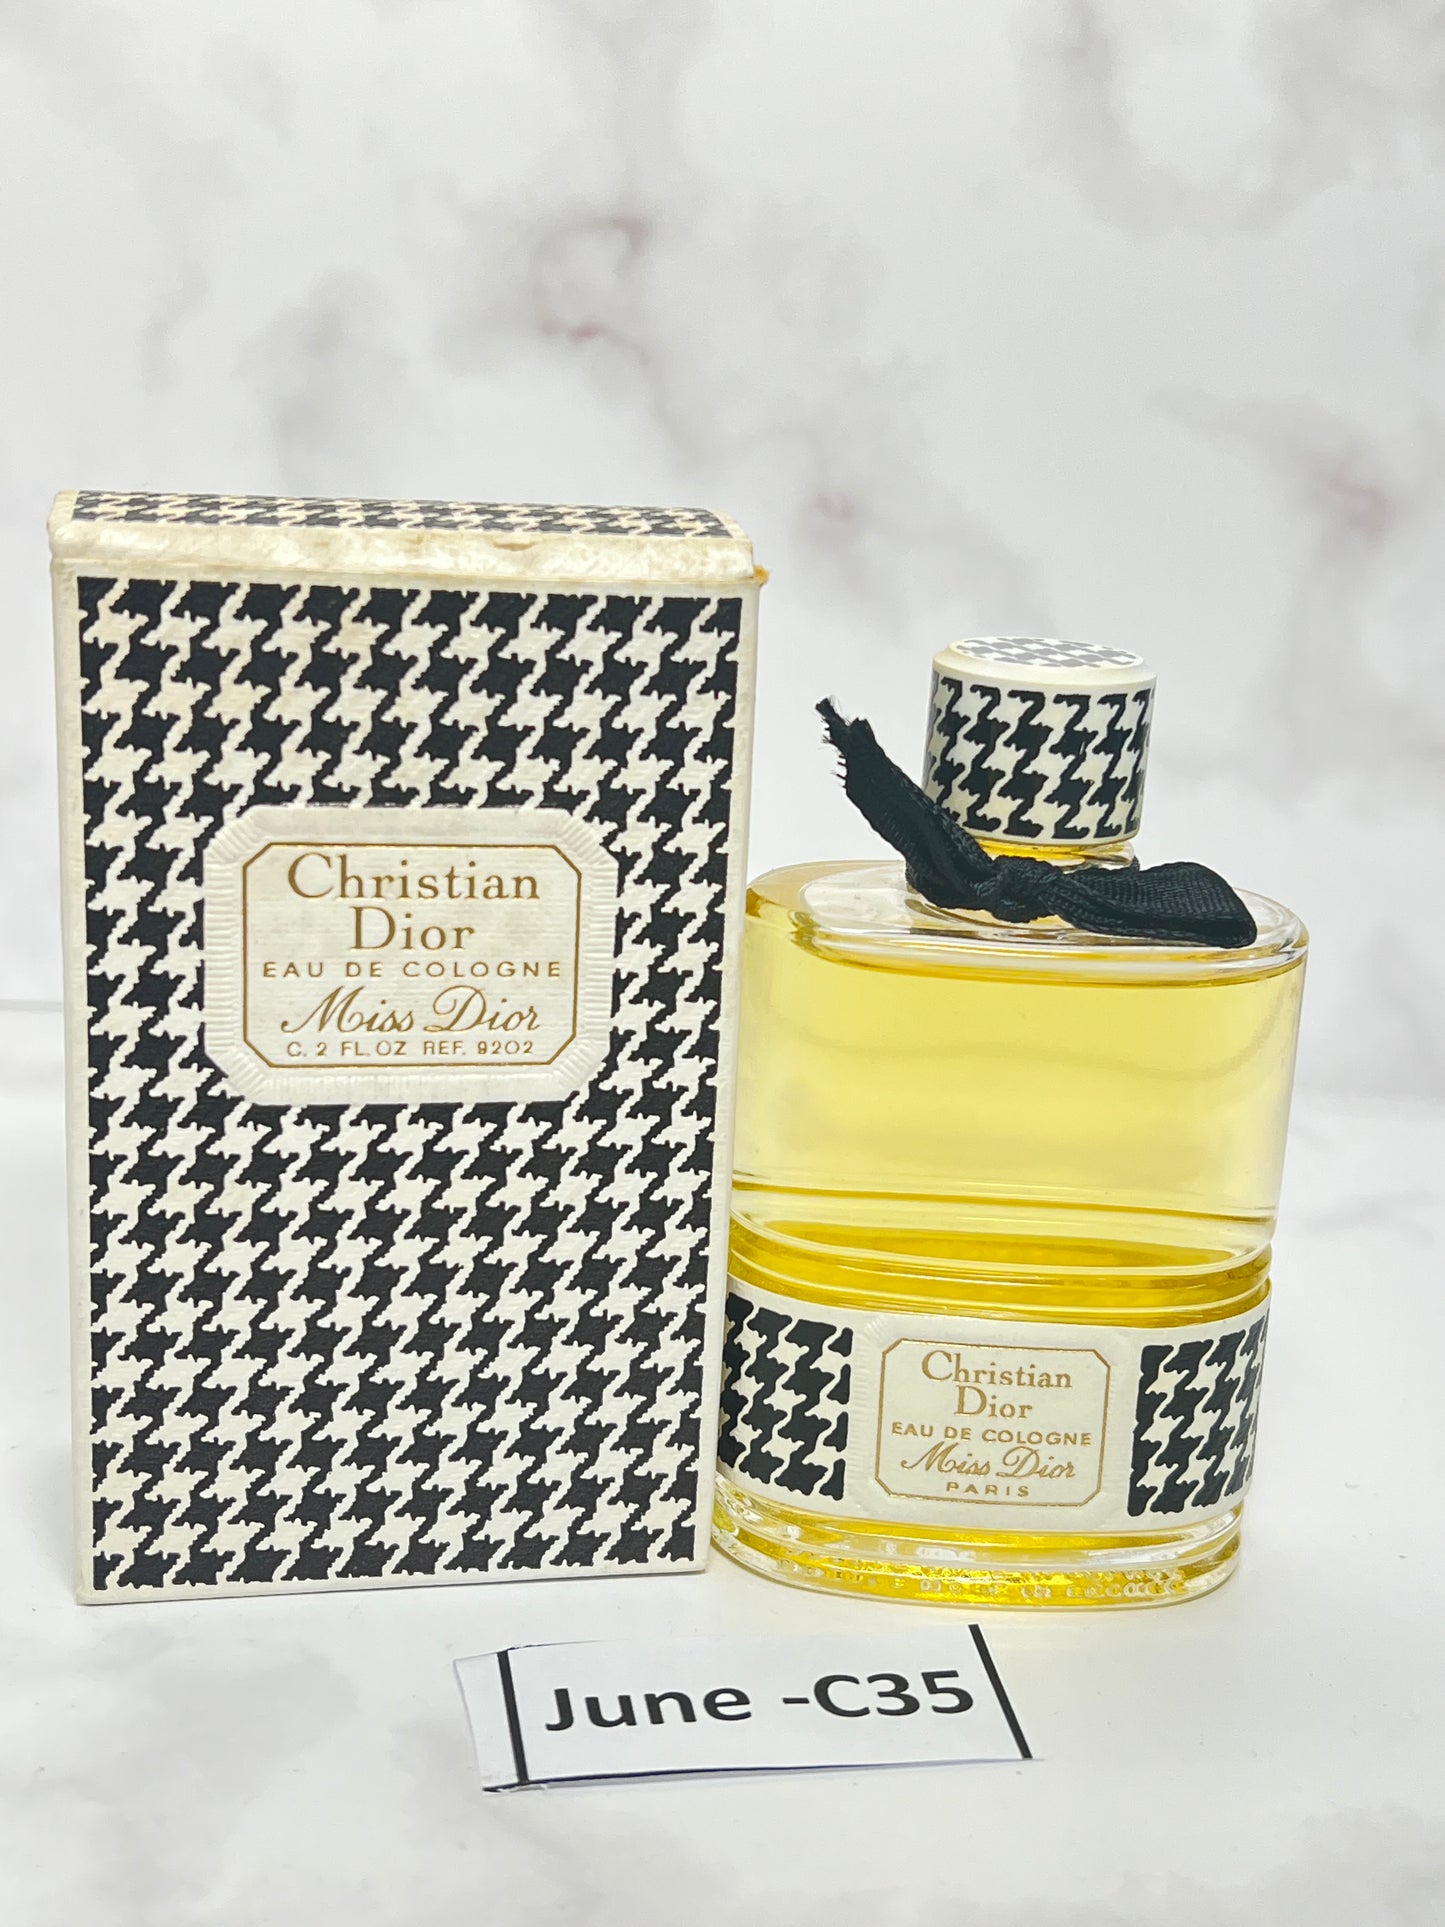 Rare Christian Dior miss dior 59 ml 2 oz Eau de cologne EDC Perfume  - JUNE-C35